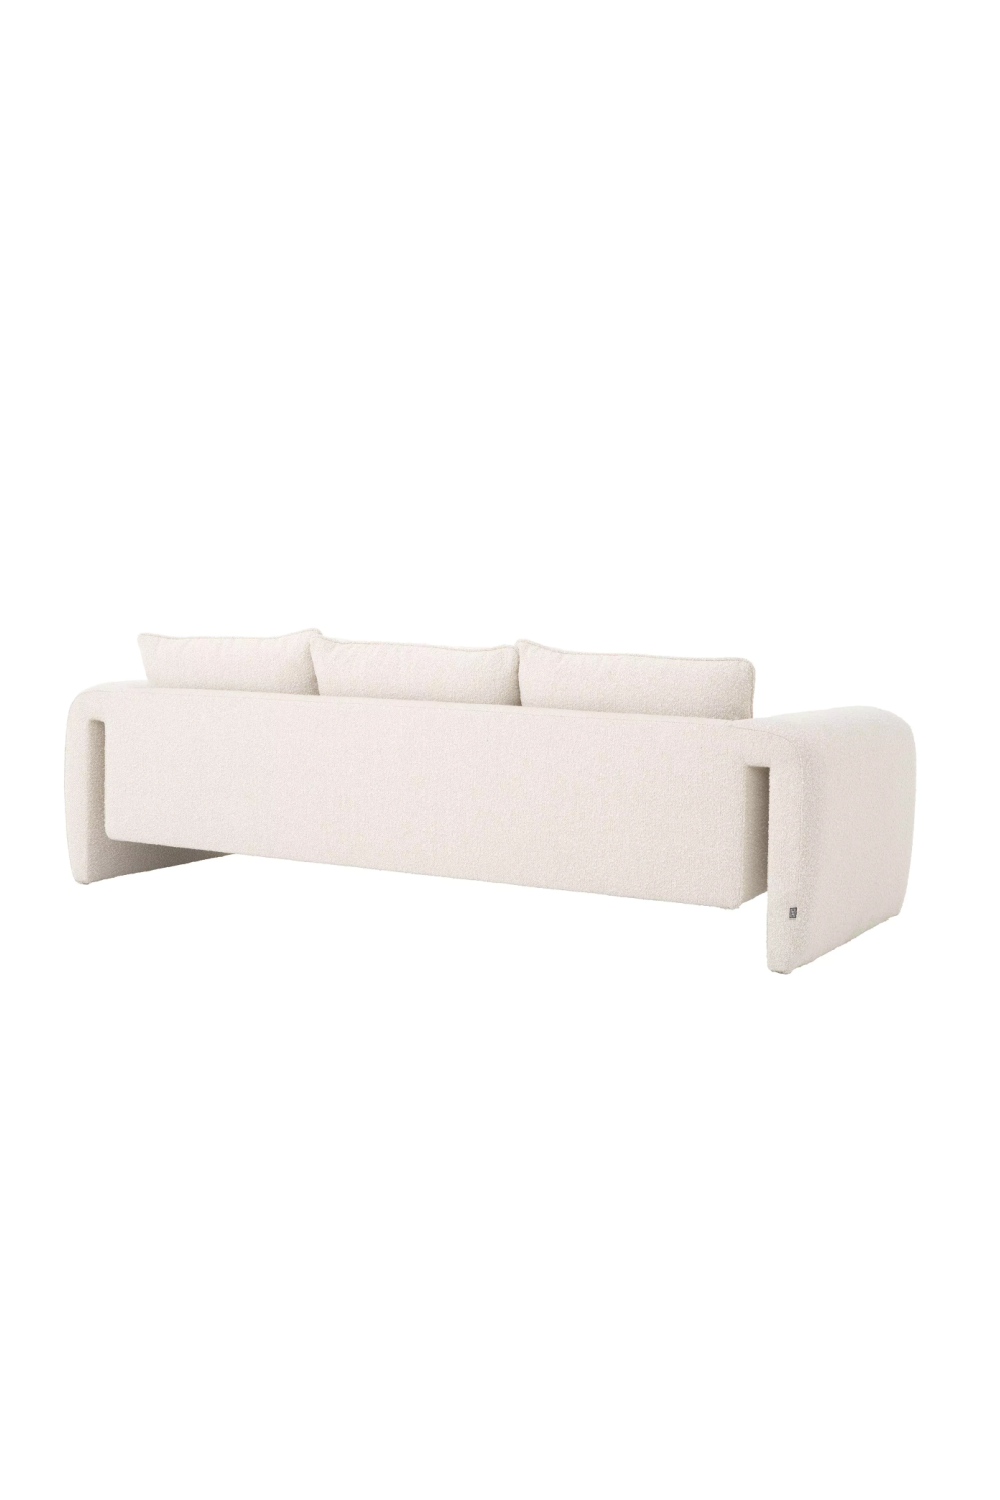 Cream Bouclé Upholstered Sofa | Eichholtz Tondo | Oroa.com